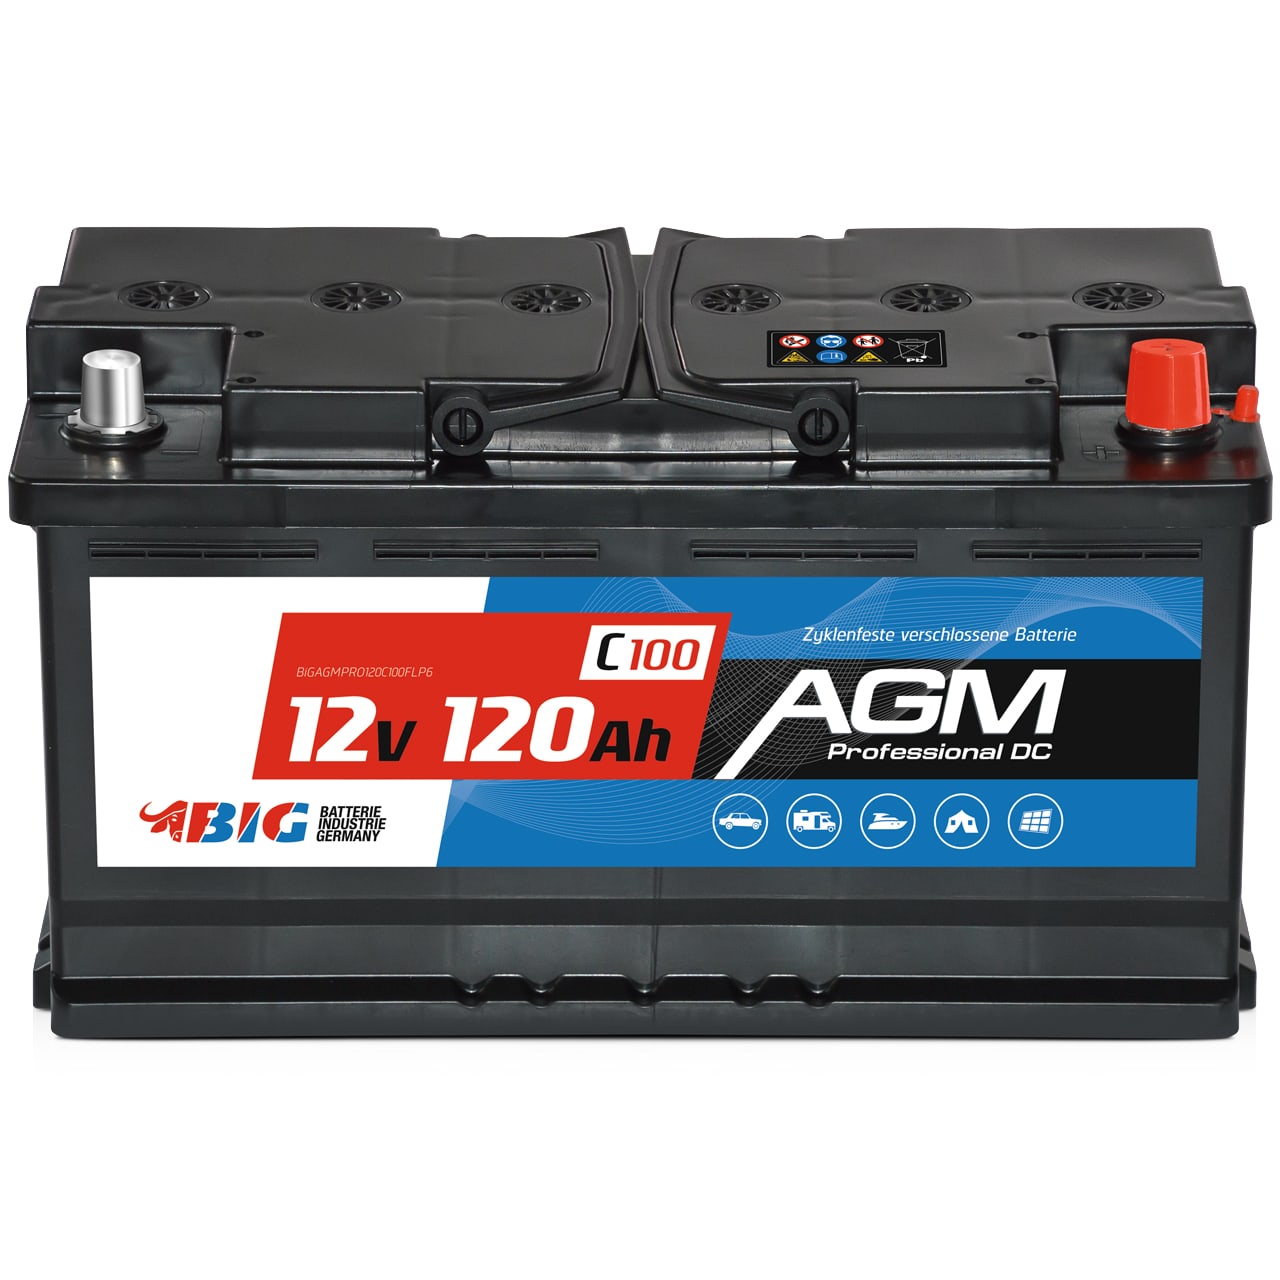 AGM-Batterie-Ladegerät - China Fournisseur, Großhandel